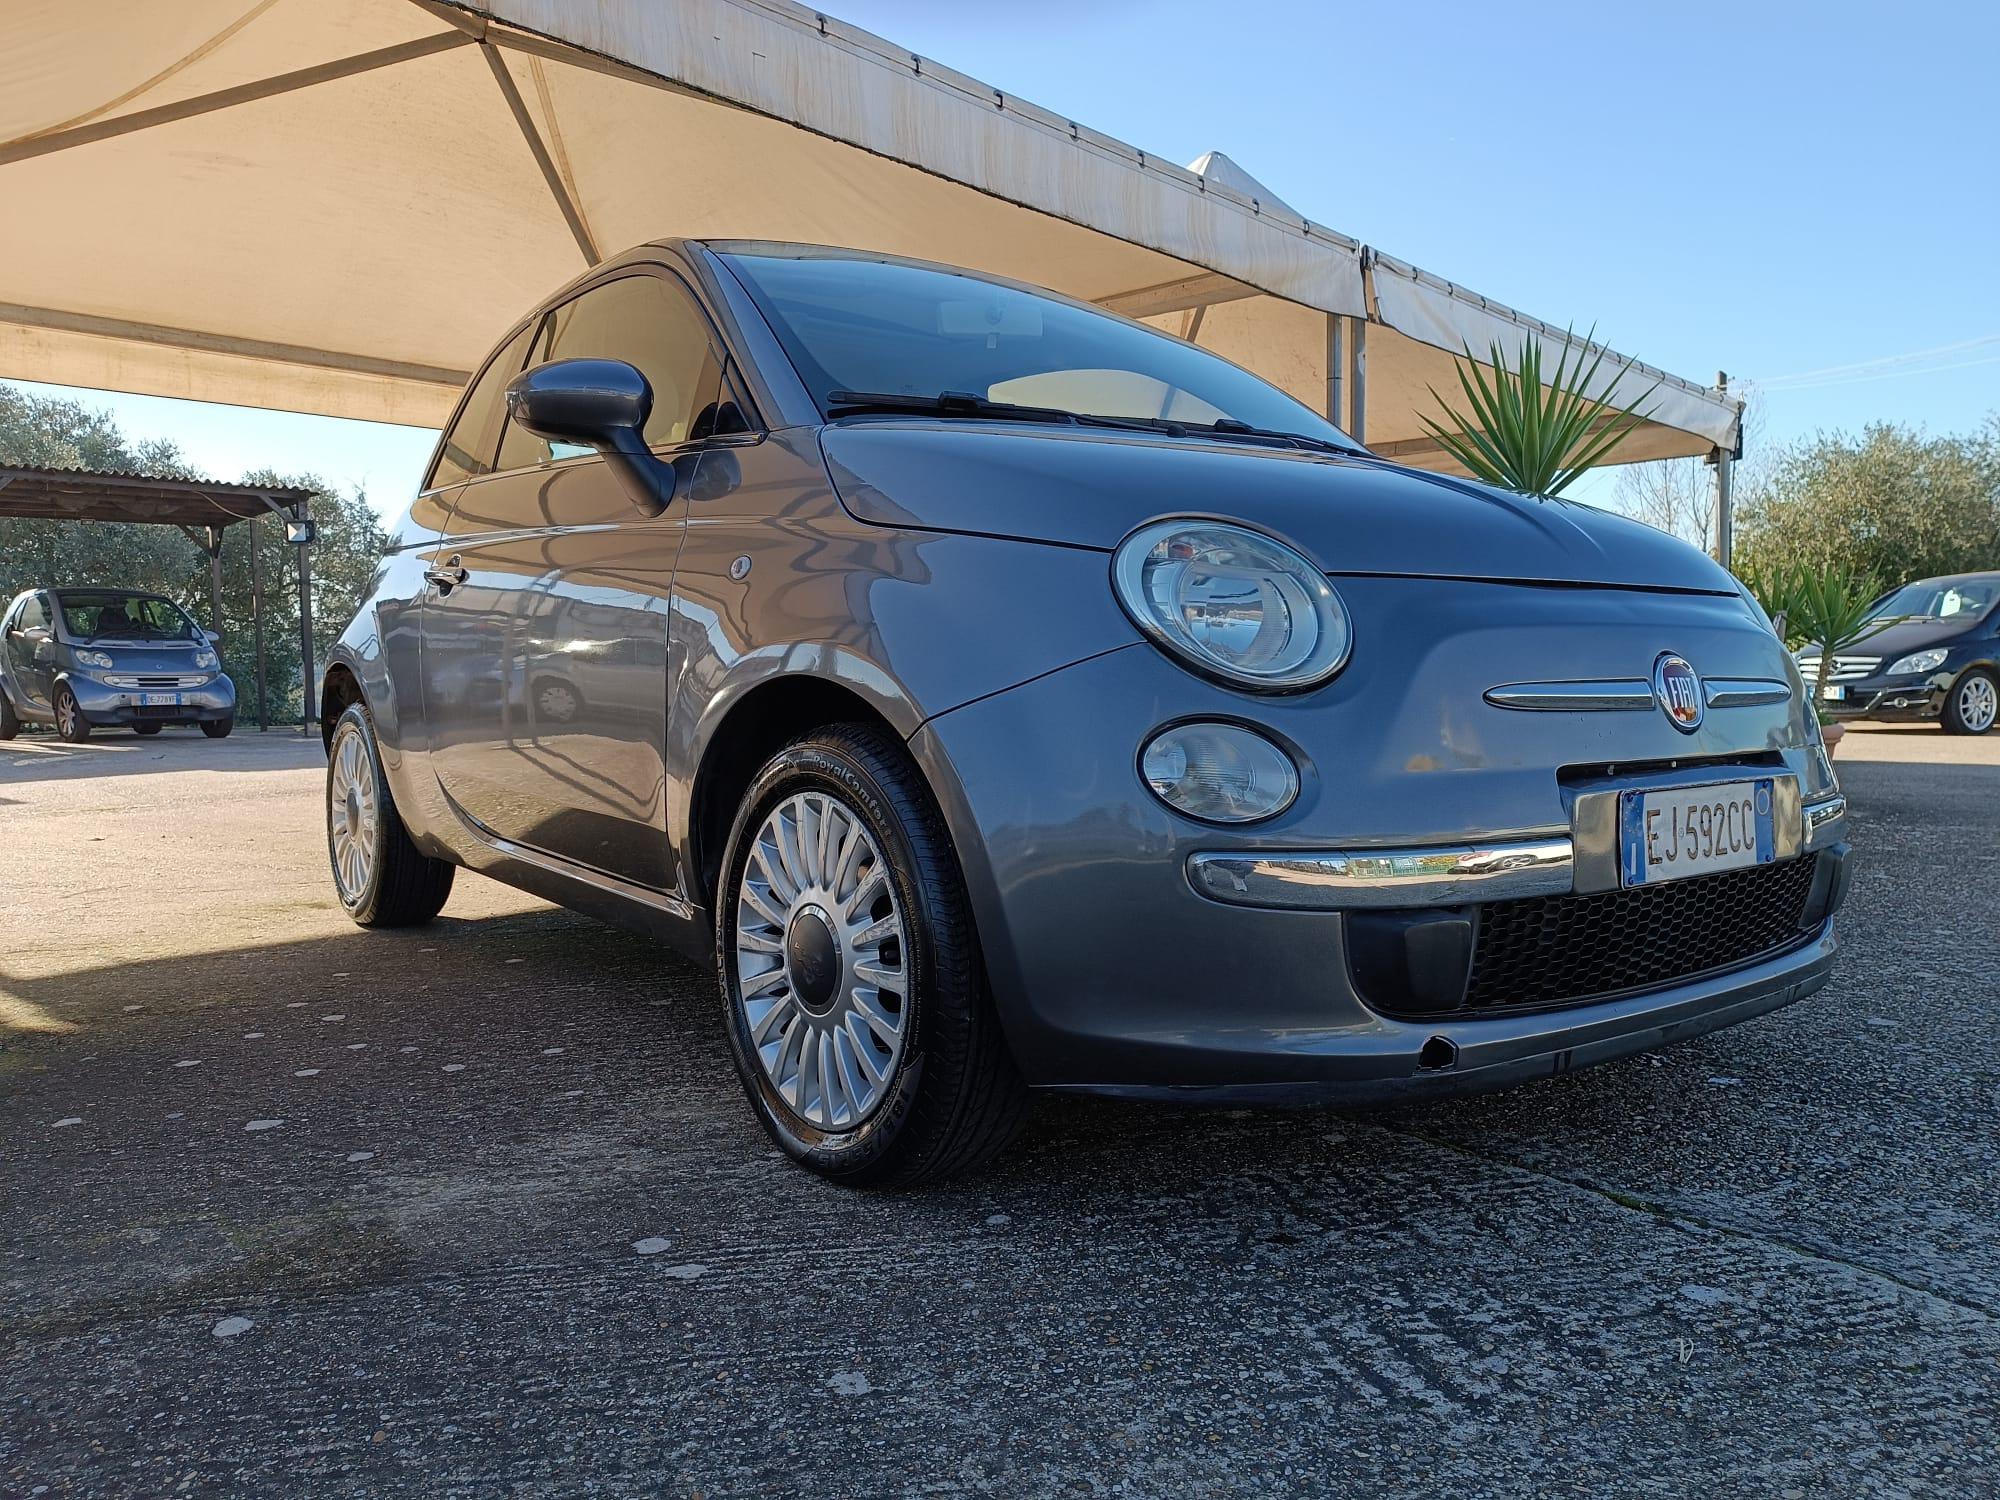 Fiat 500 1.2  Automatica!! 2011 Uni Pro Km 136.000 Garanzia Finanziamento